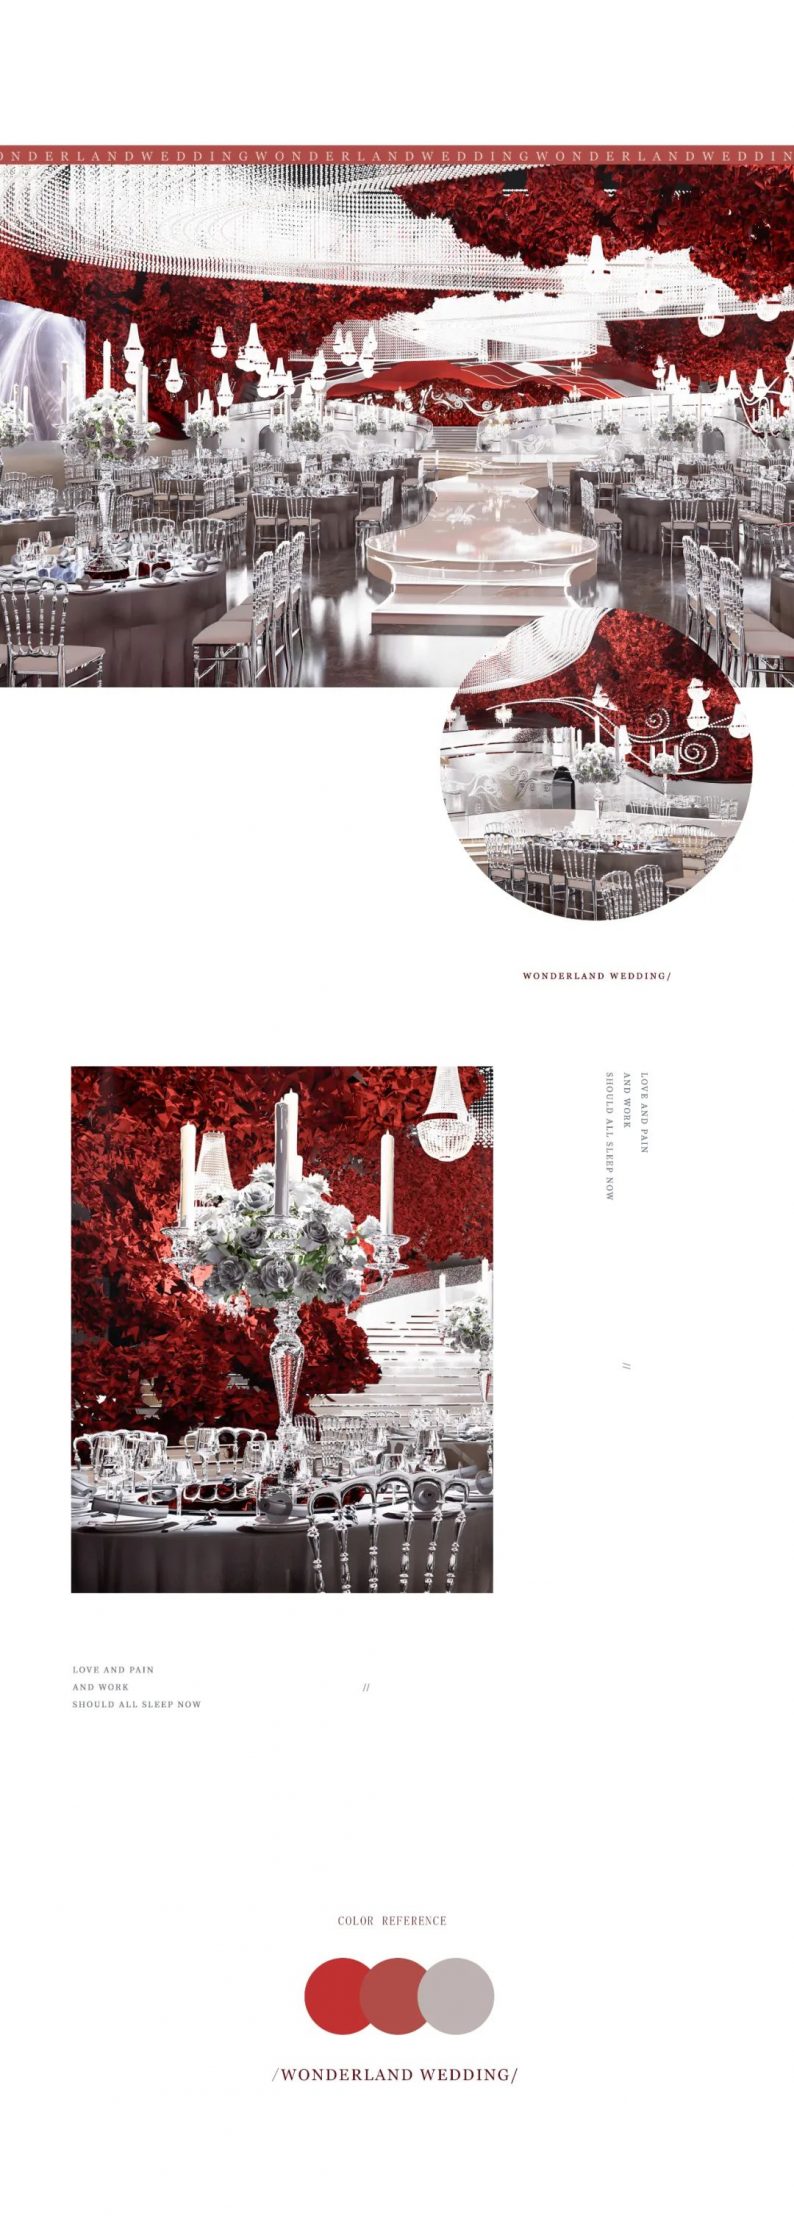 婚礼堂发布：佛山万德涞艺术中心【红色水晶】宴会设计  第3张